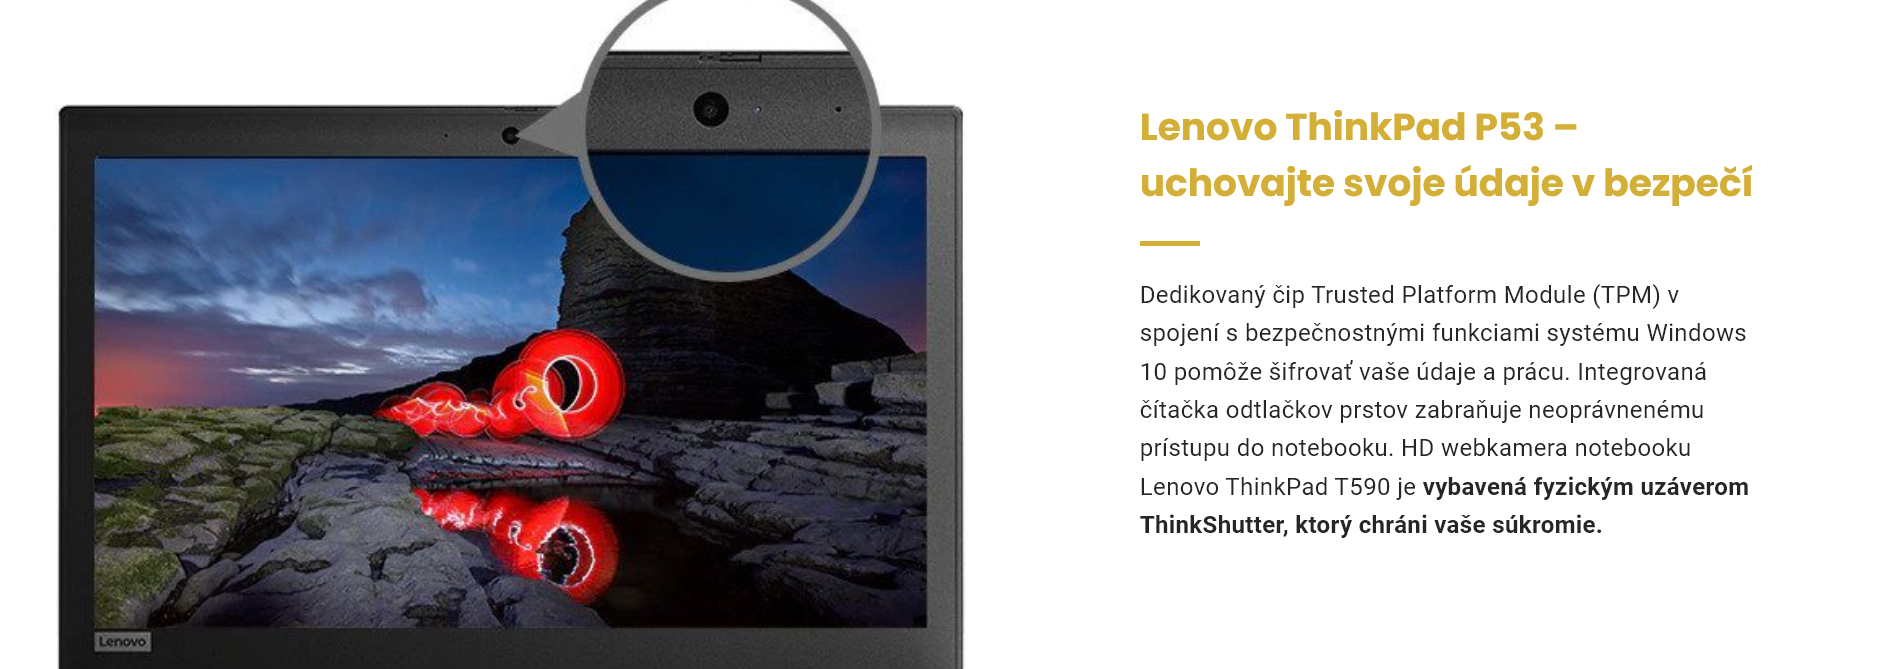 Lenovo ThinkPad P53itzoo safe